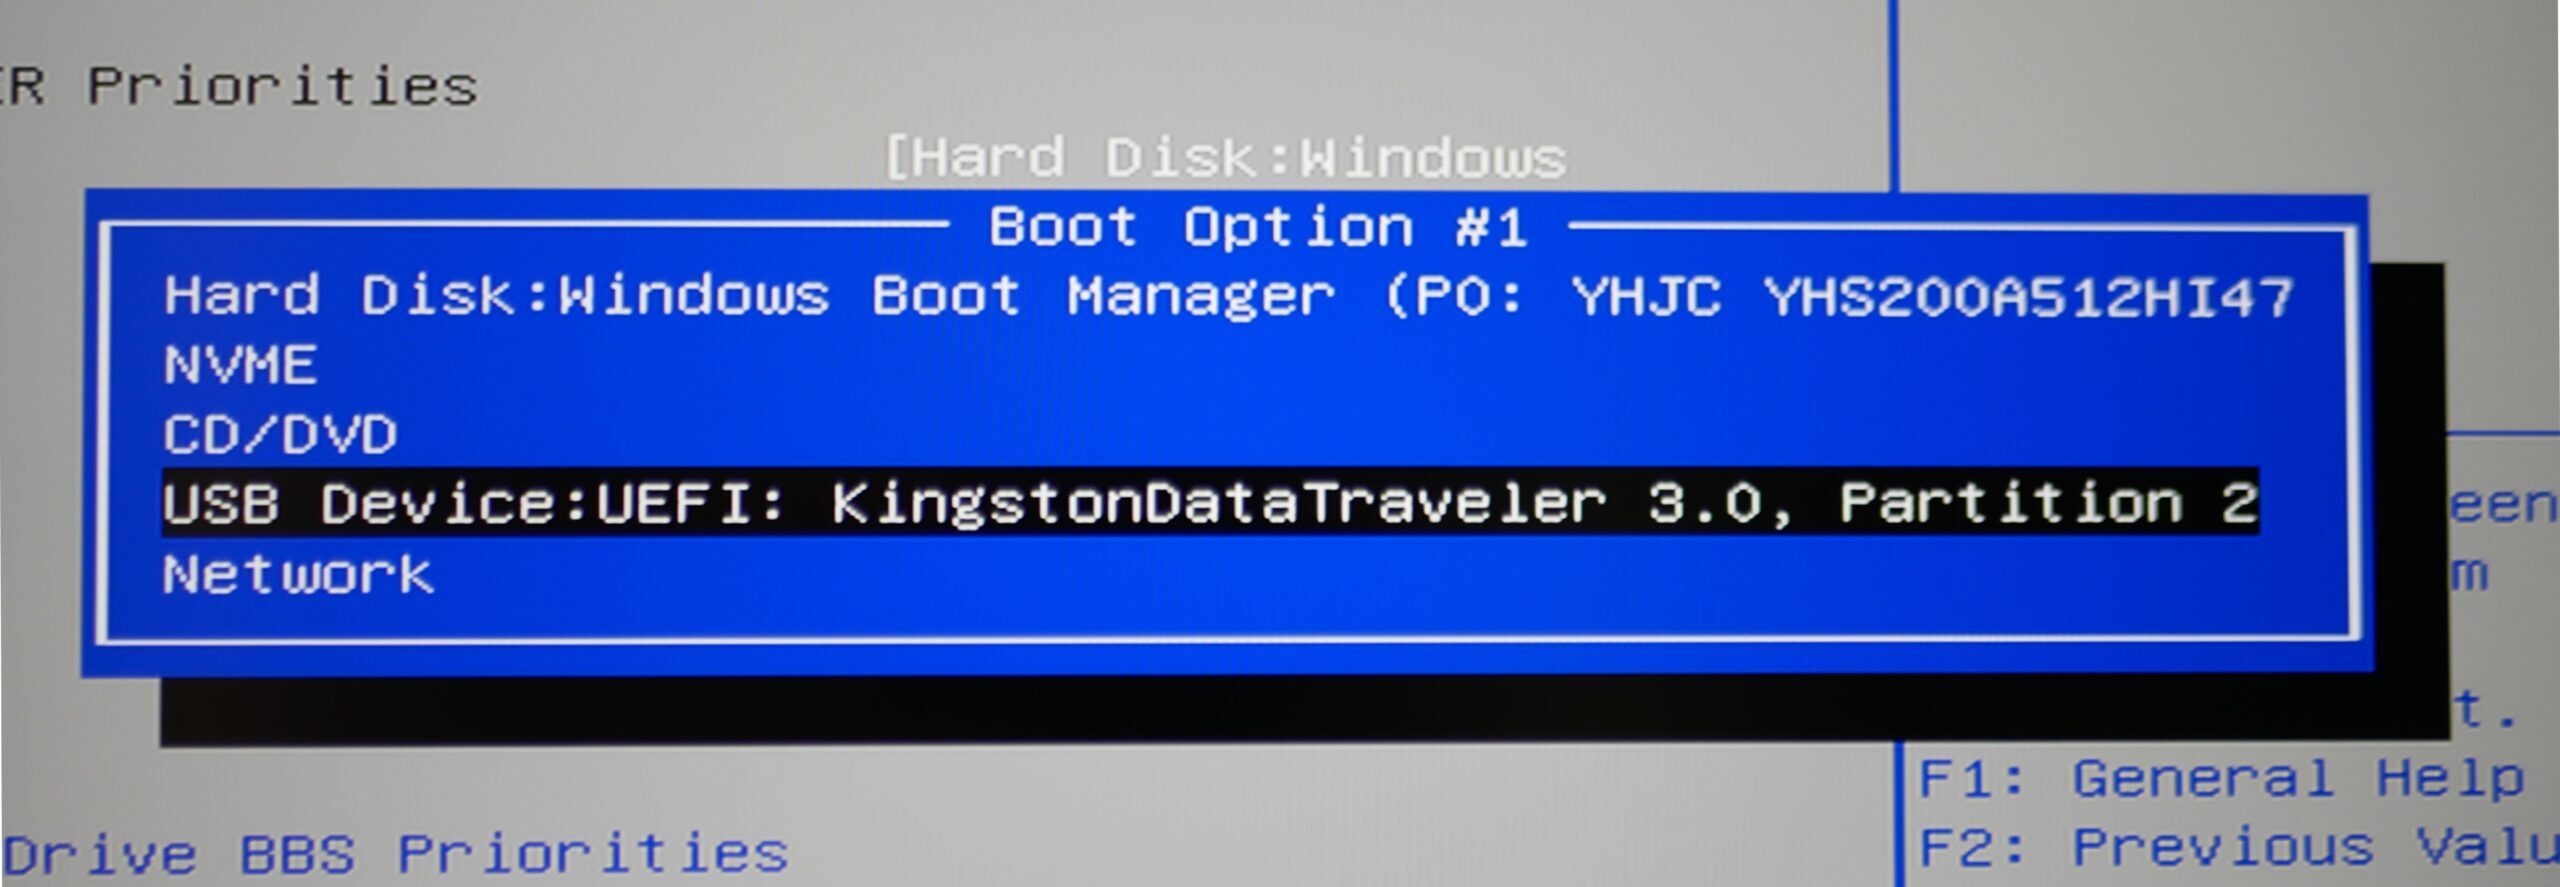 Bootpriorität einstellen - für die Ubuntu-Installation vom USB-Stick booten